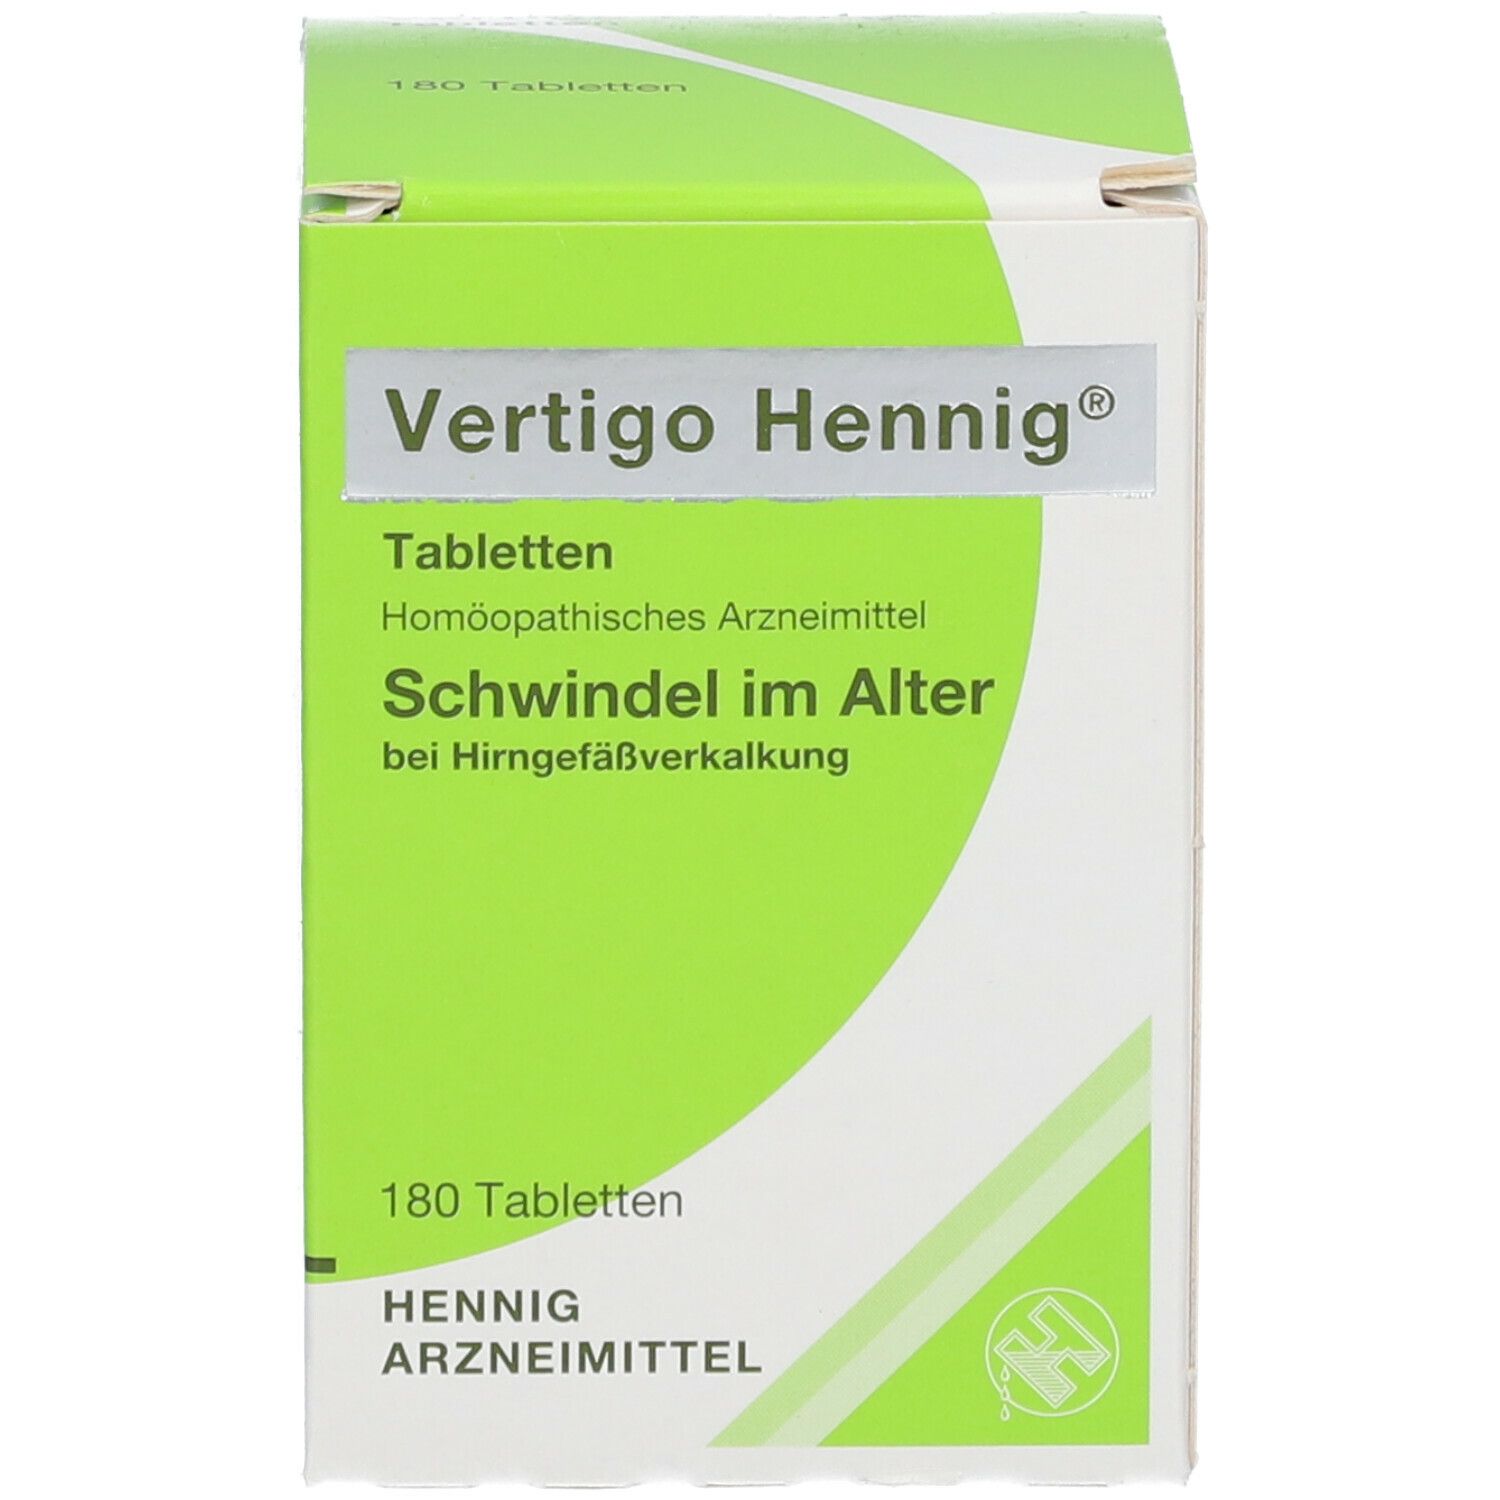 Vertigo Hennig® Tabletten